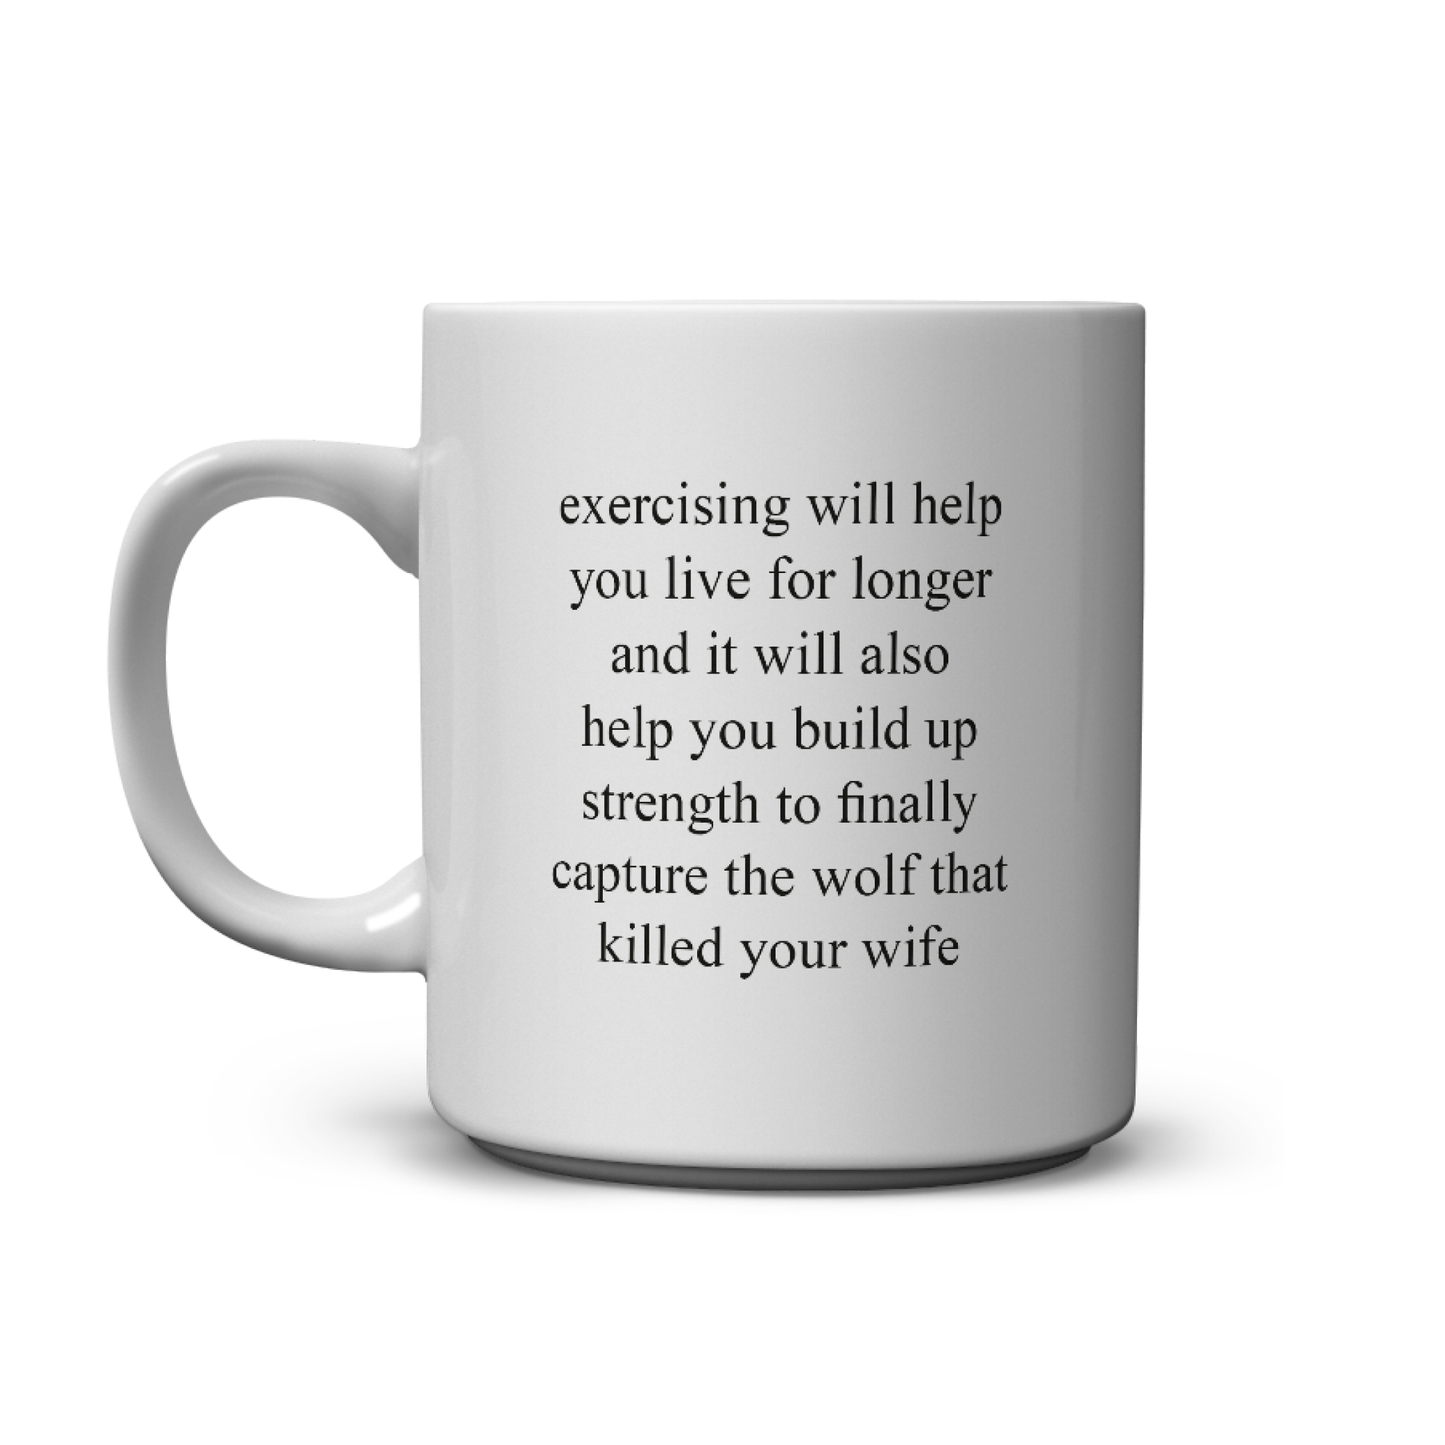 exercise mug